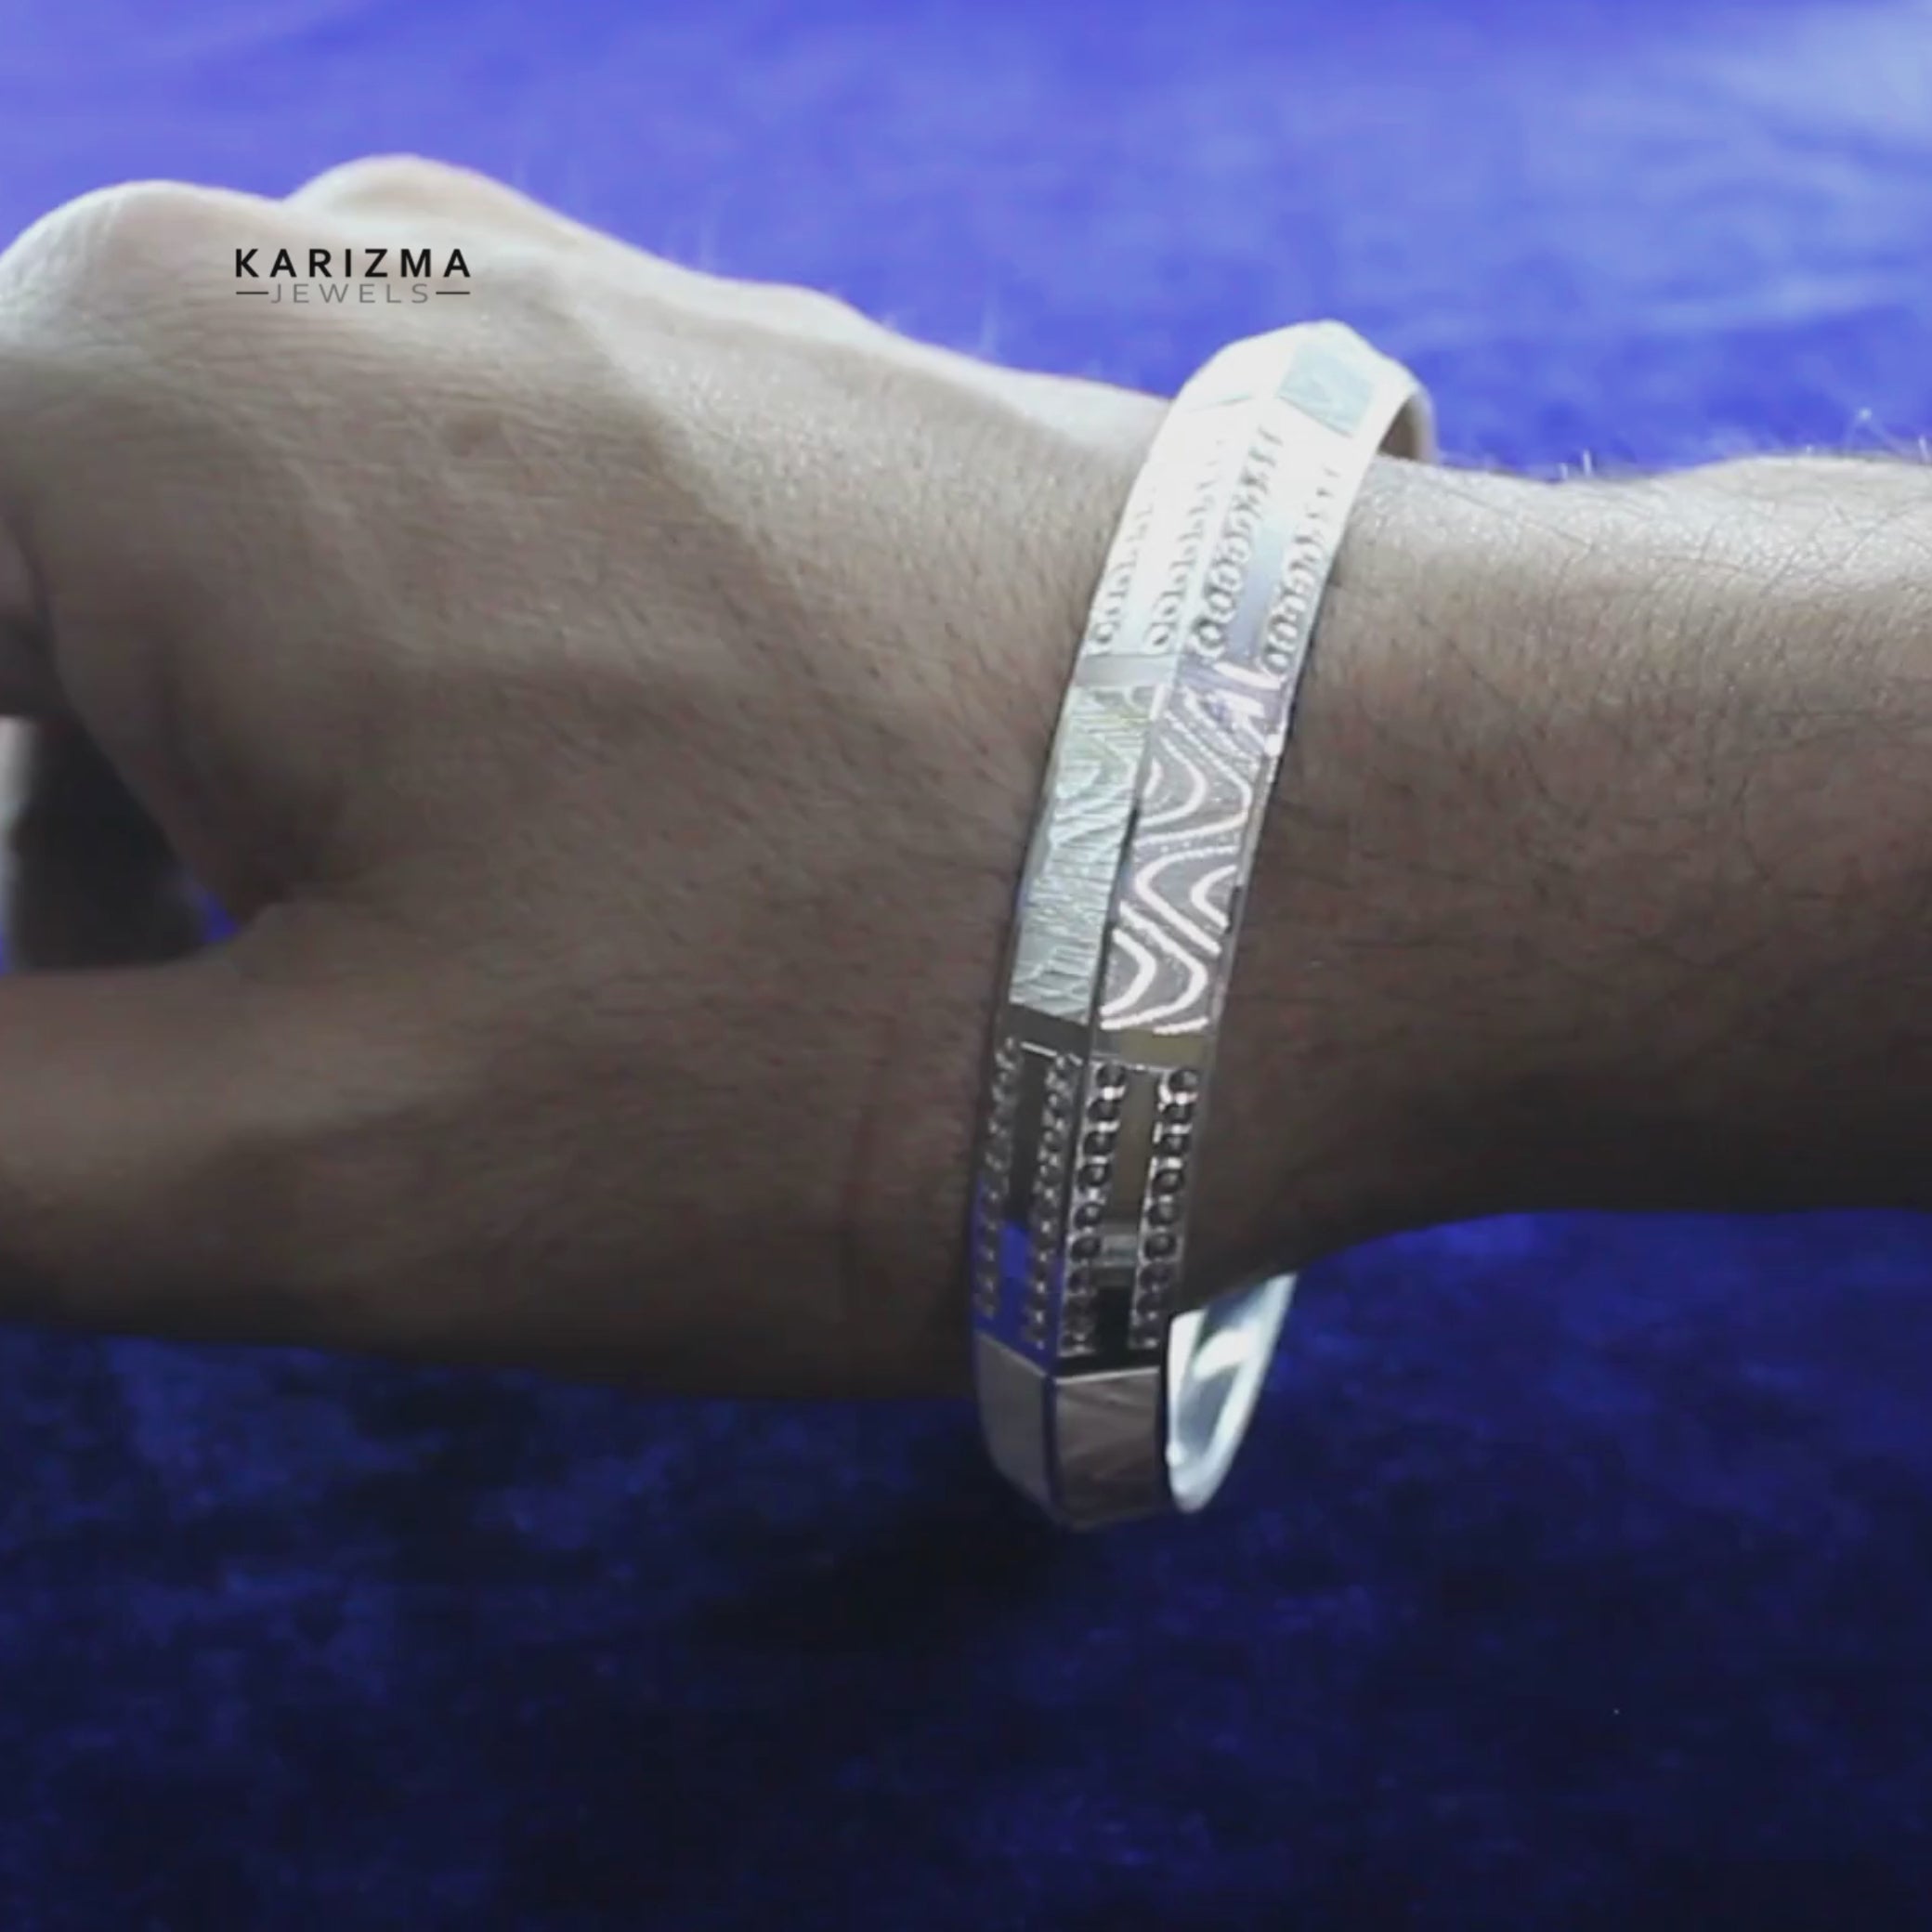 Buy 925 sterling silver classy hollow chain bracelet for Men's | TrueSilver